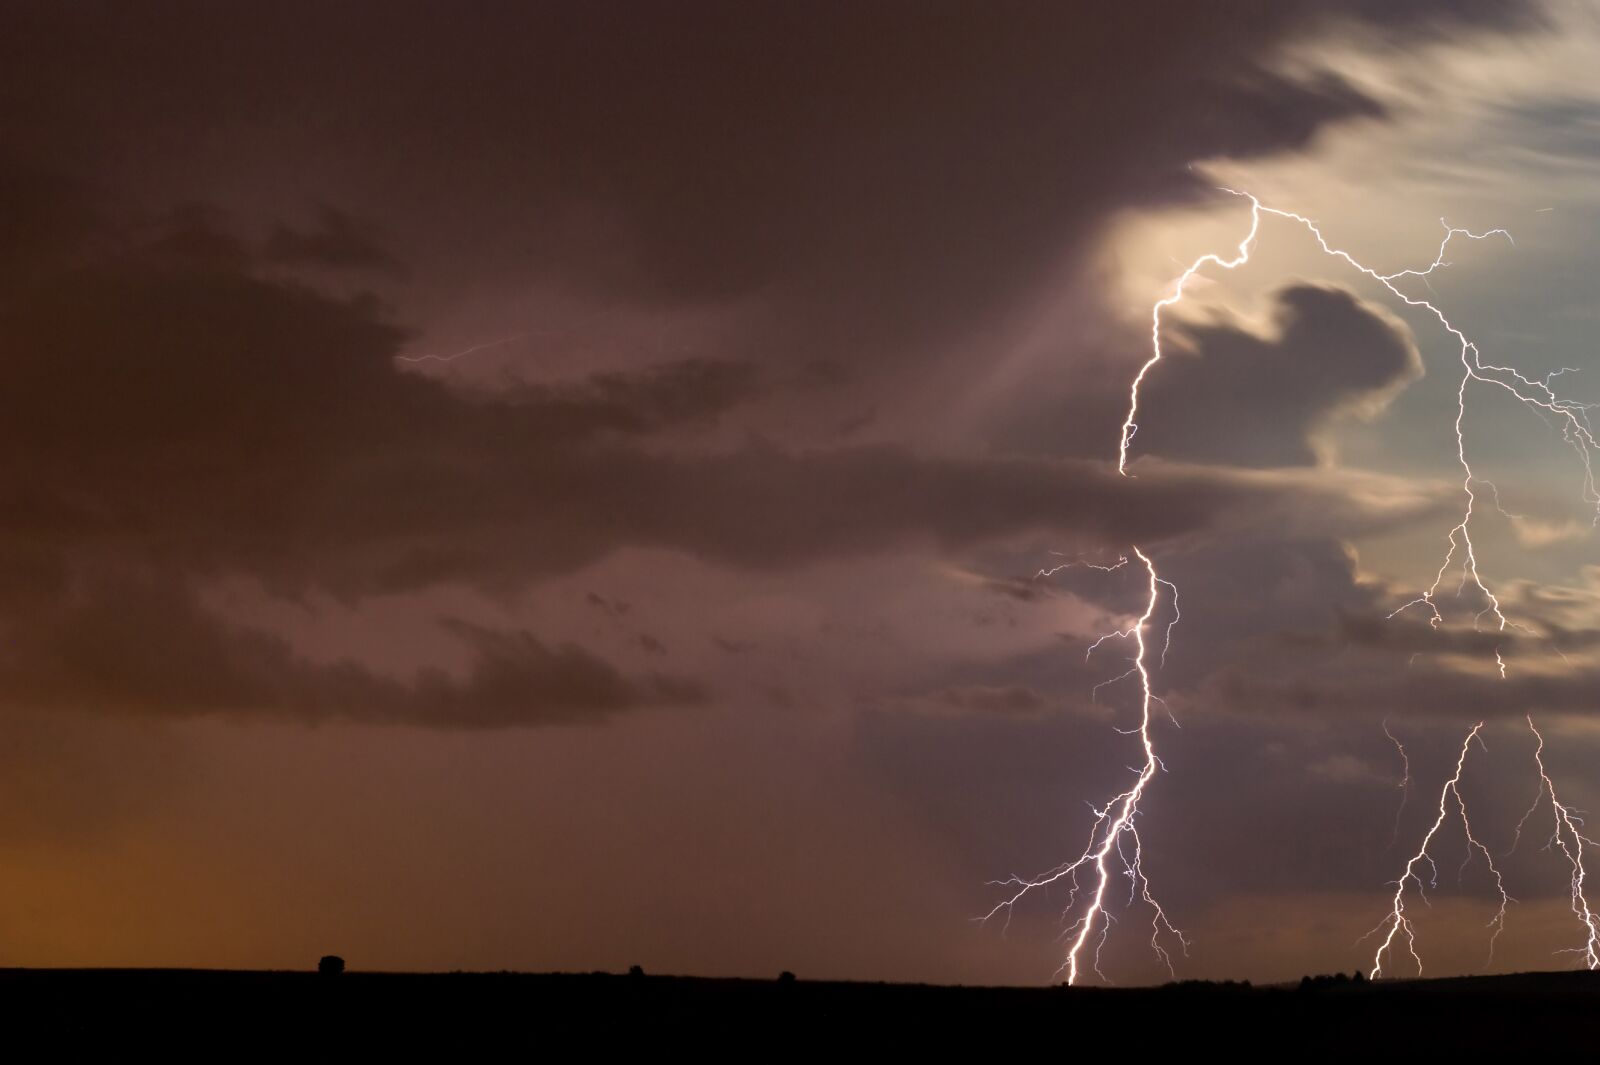 Nikon D3 sample photo. Storm, lightning, clouds photography